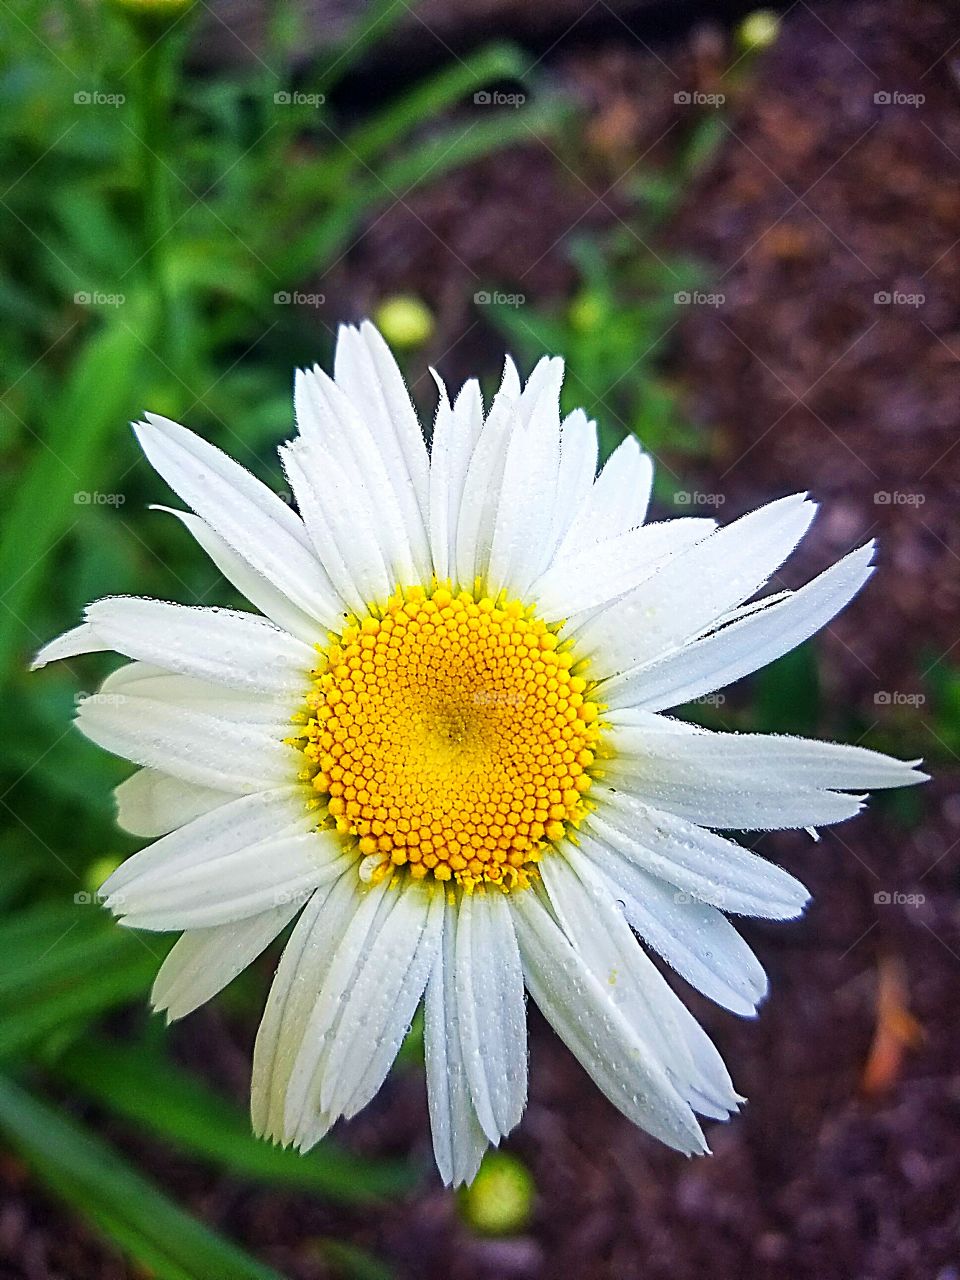 Daisy in Bloom